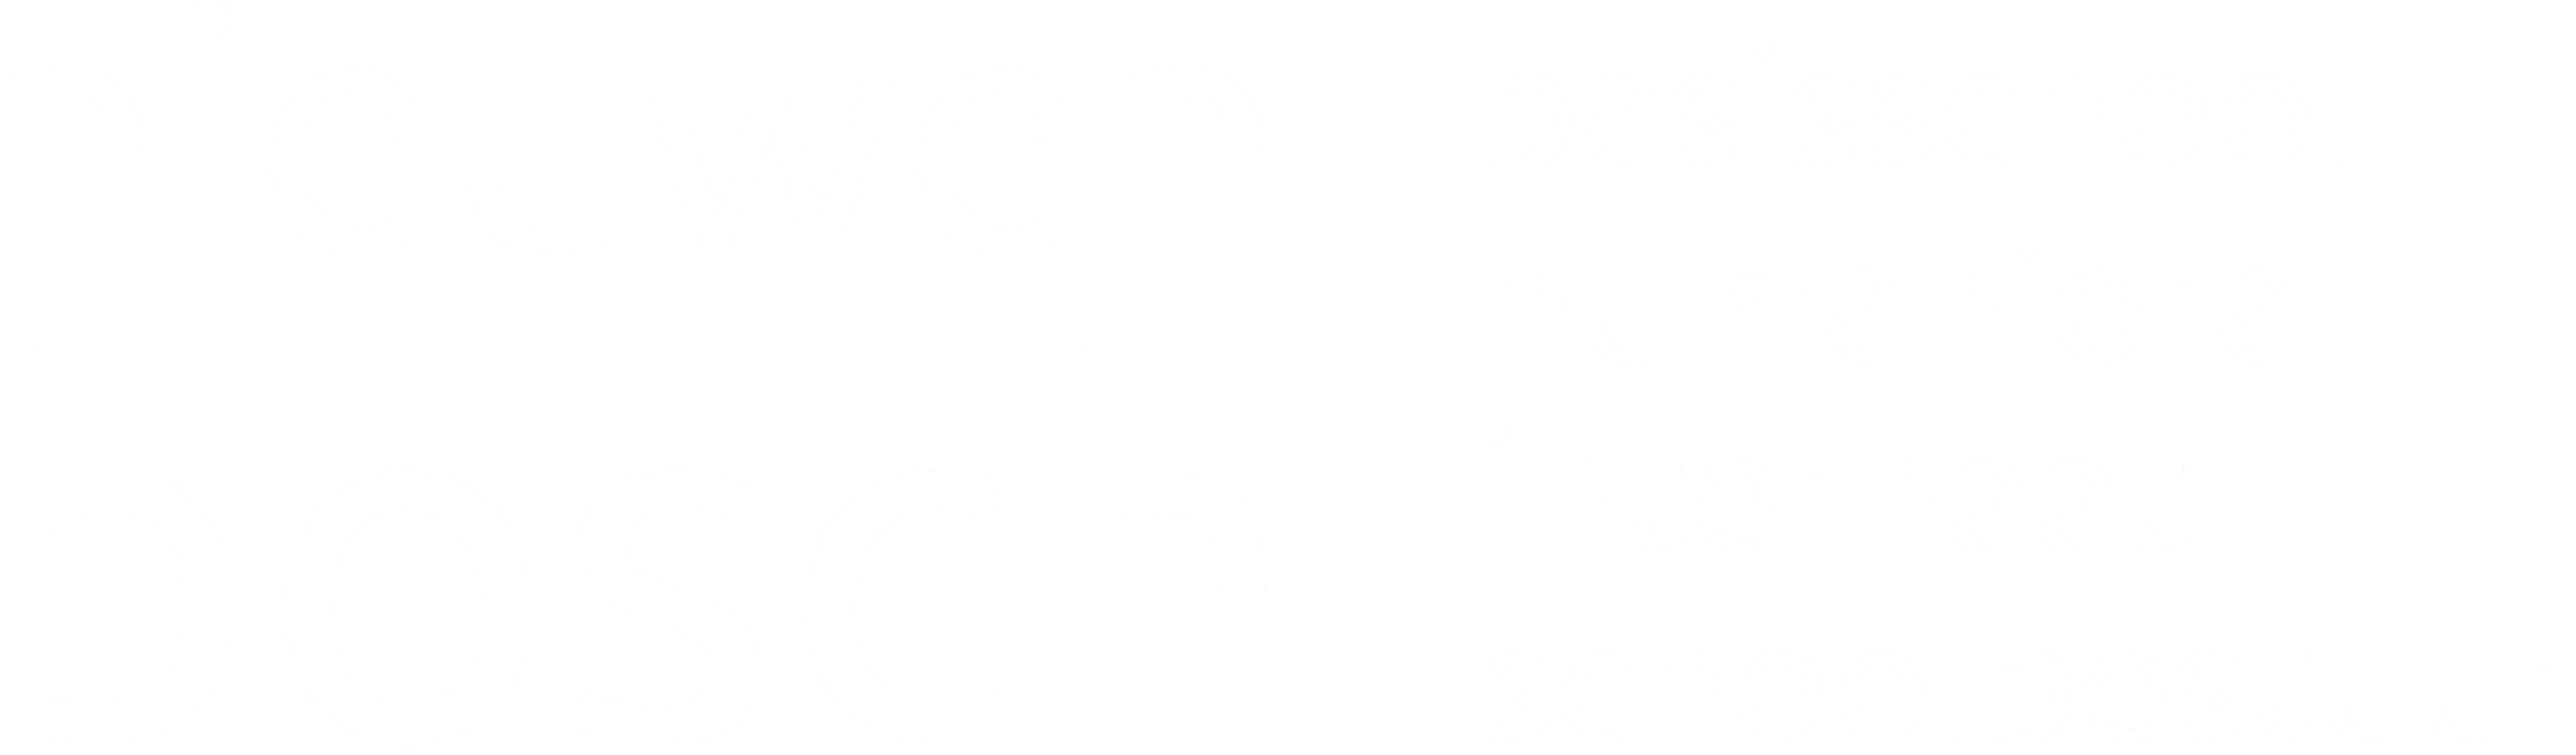 Nieuwen Bosch Gent - basisschool - humaniora - internaat - schoolbestuur